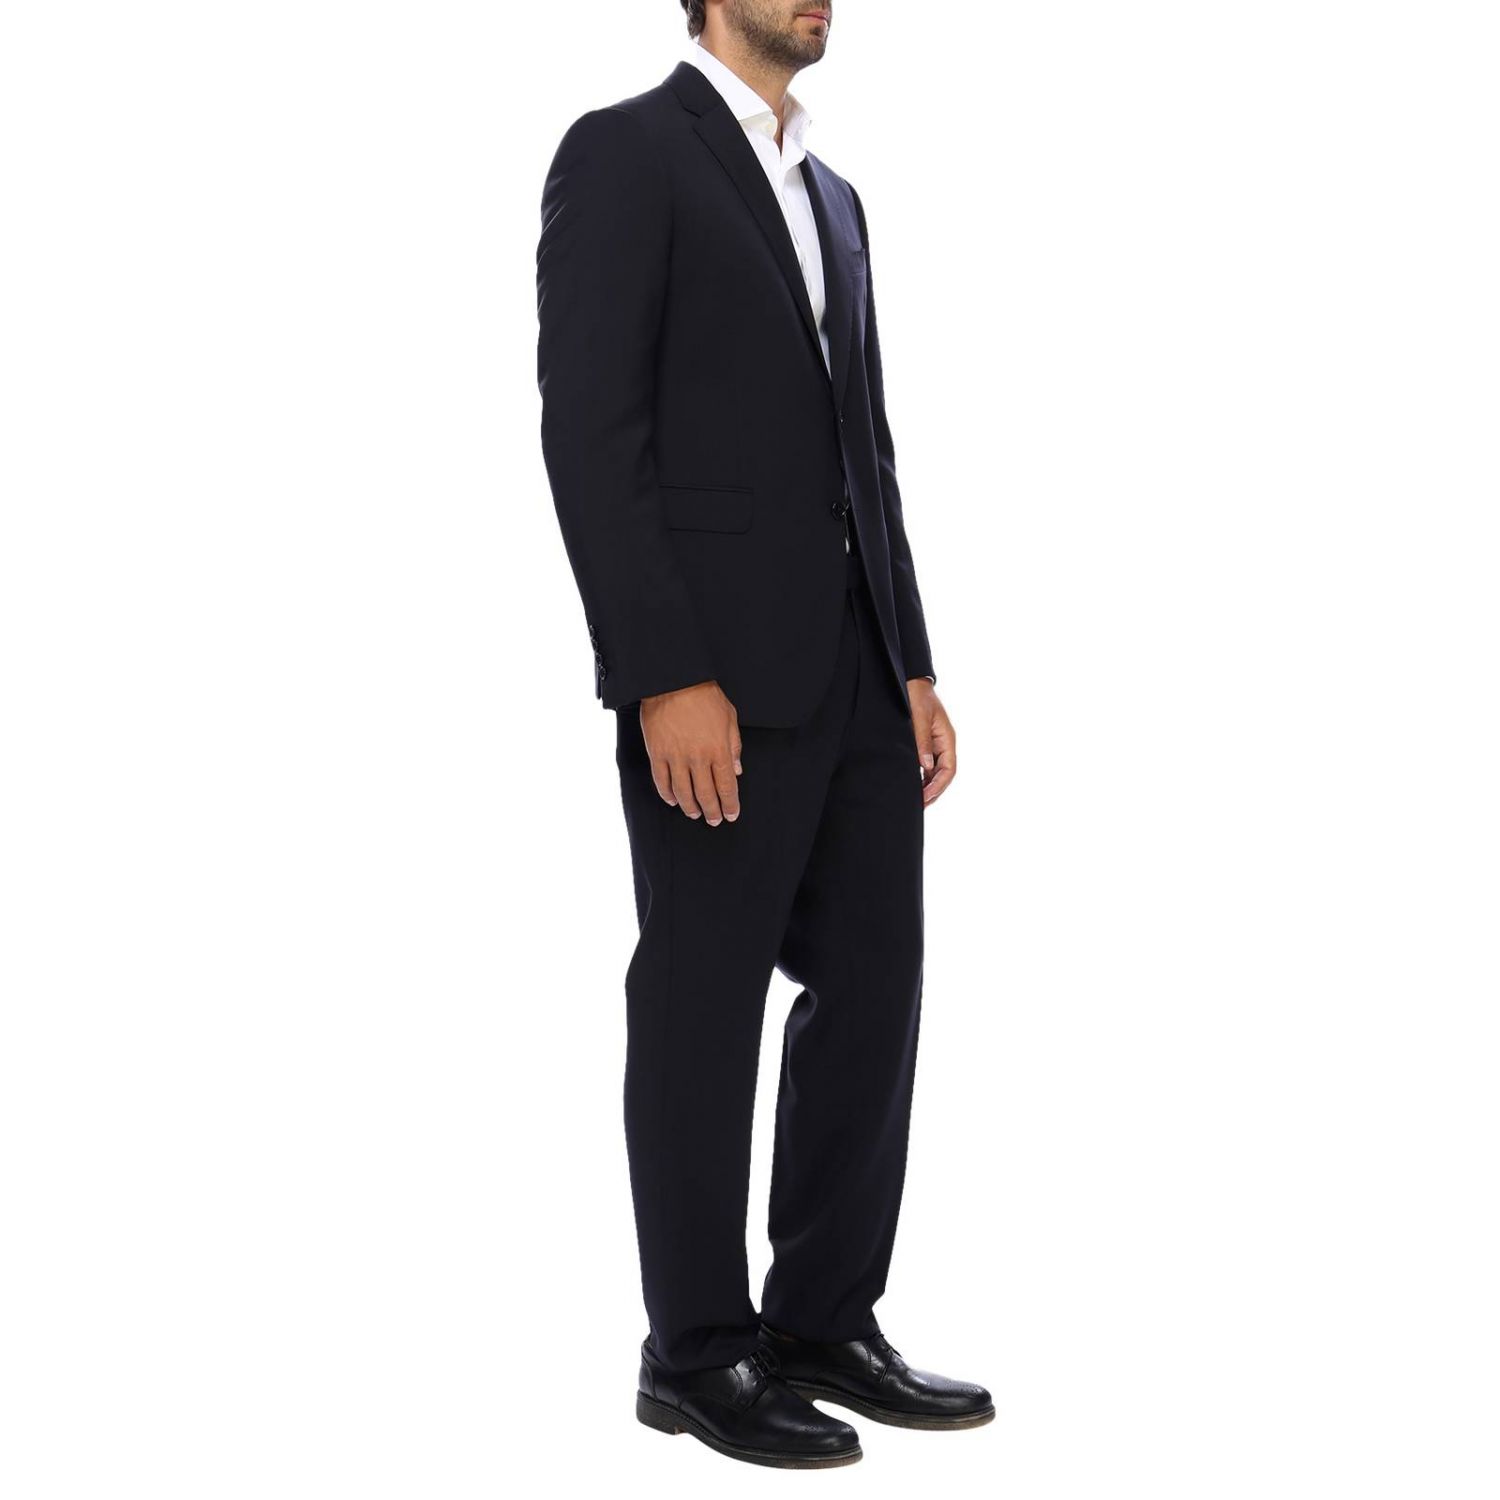 Emporio Armani Outlet: Suit men | Suit Emporio Armani Men Blue | Suit ...